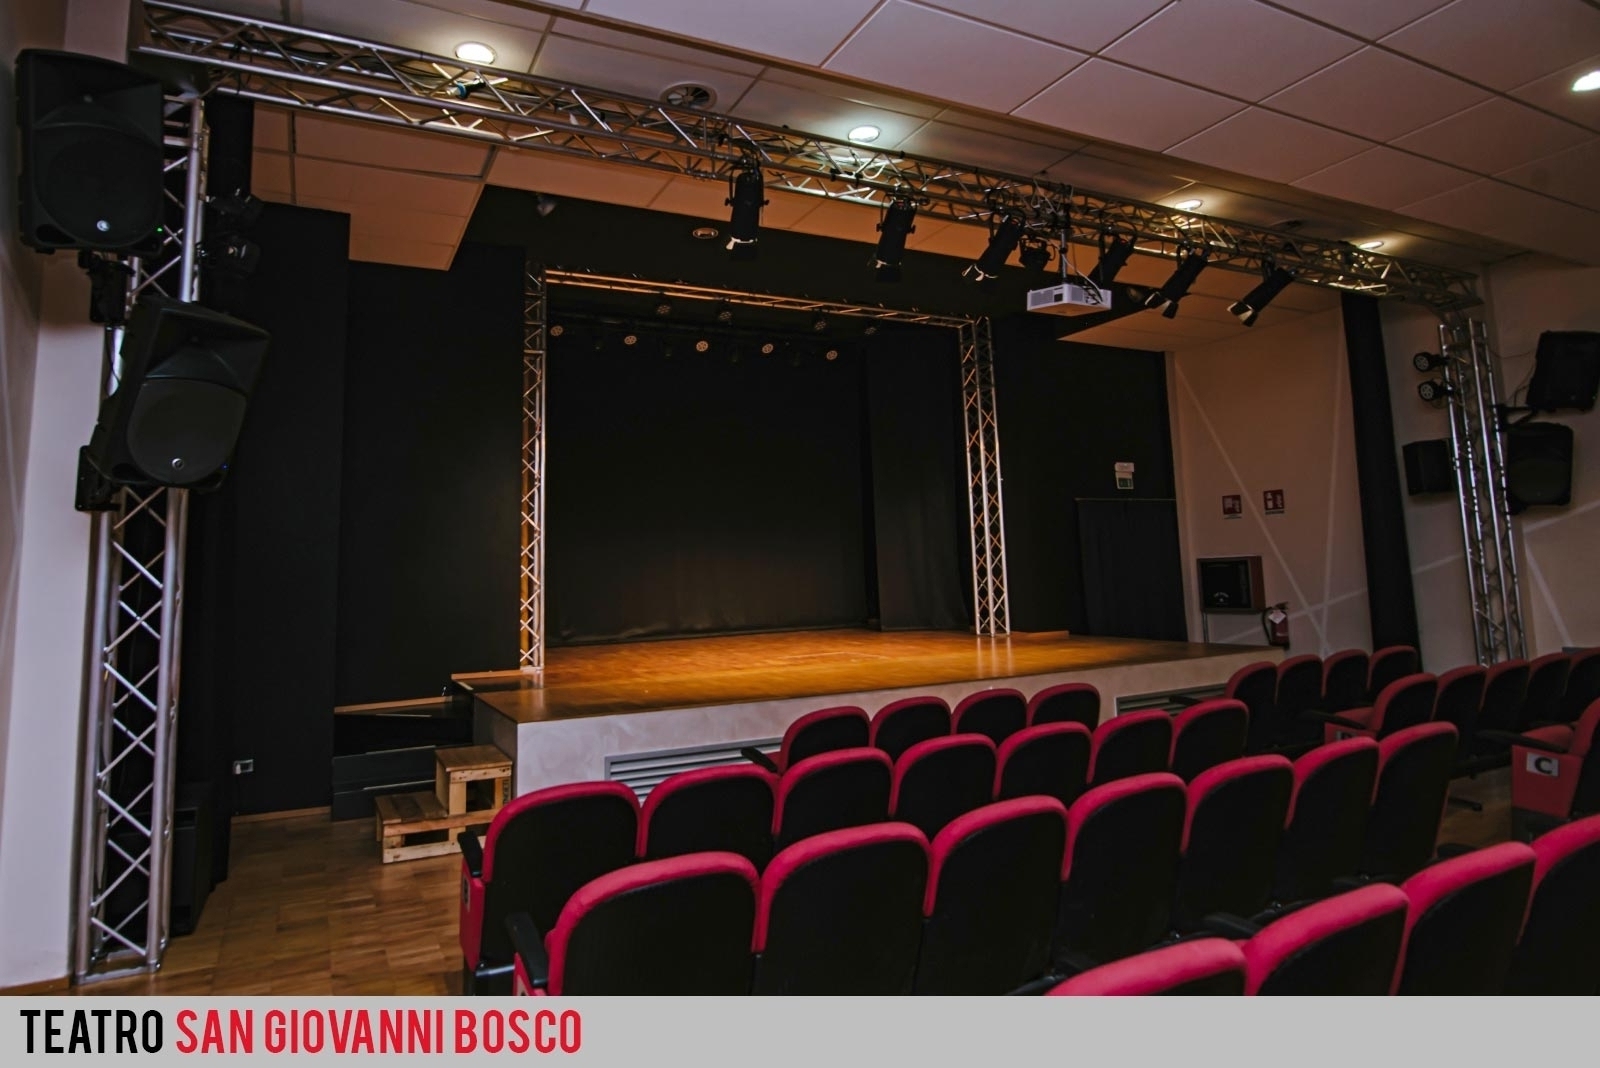  Un bando per la gestione del teatro San Giovanni Bosco